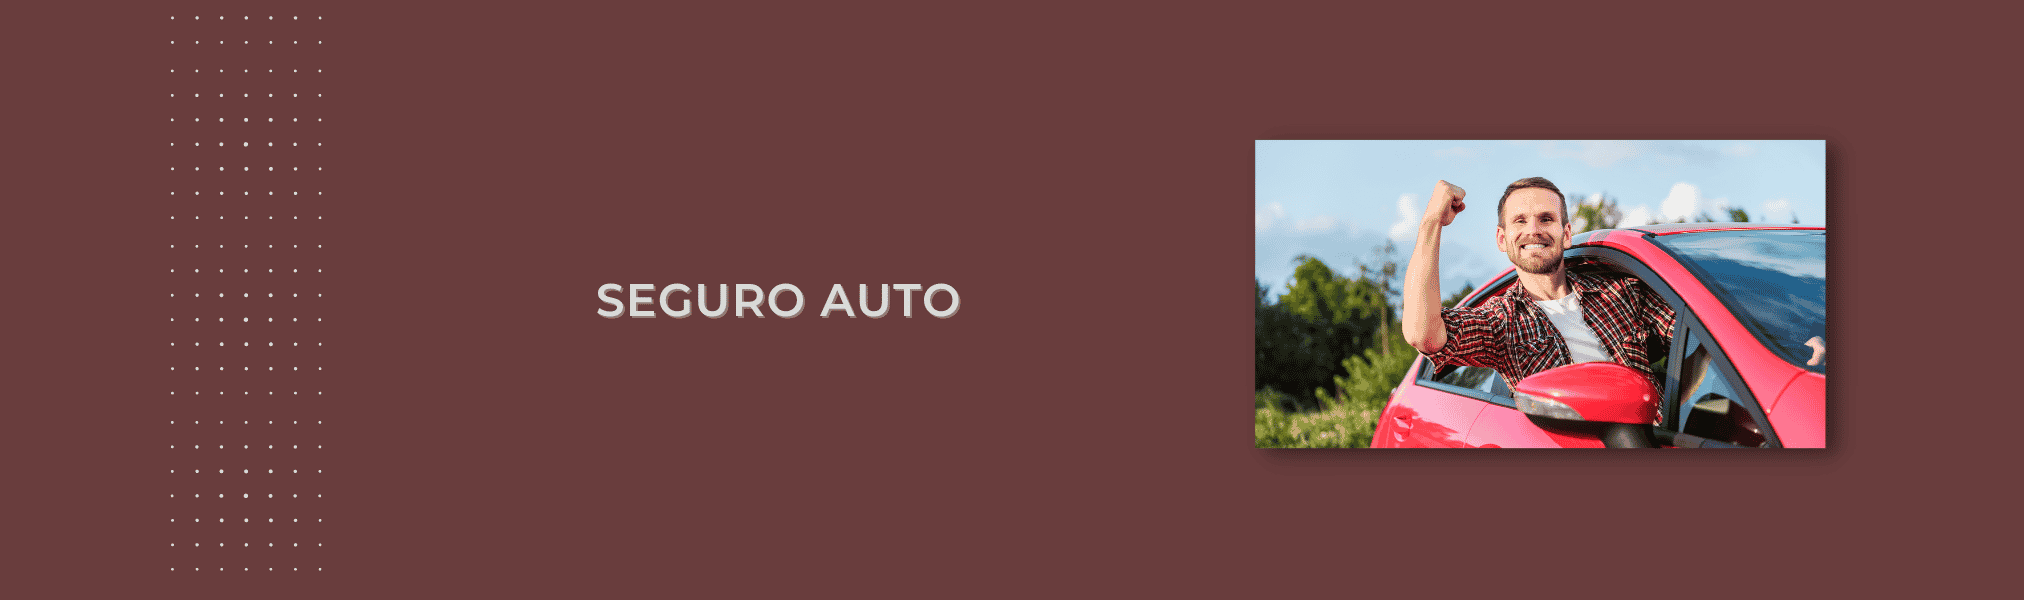 Banner Seguro Auto